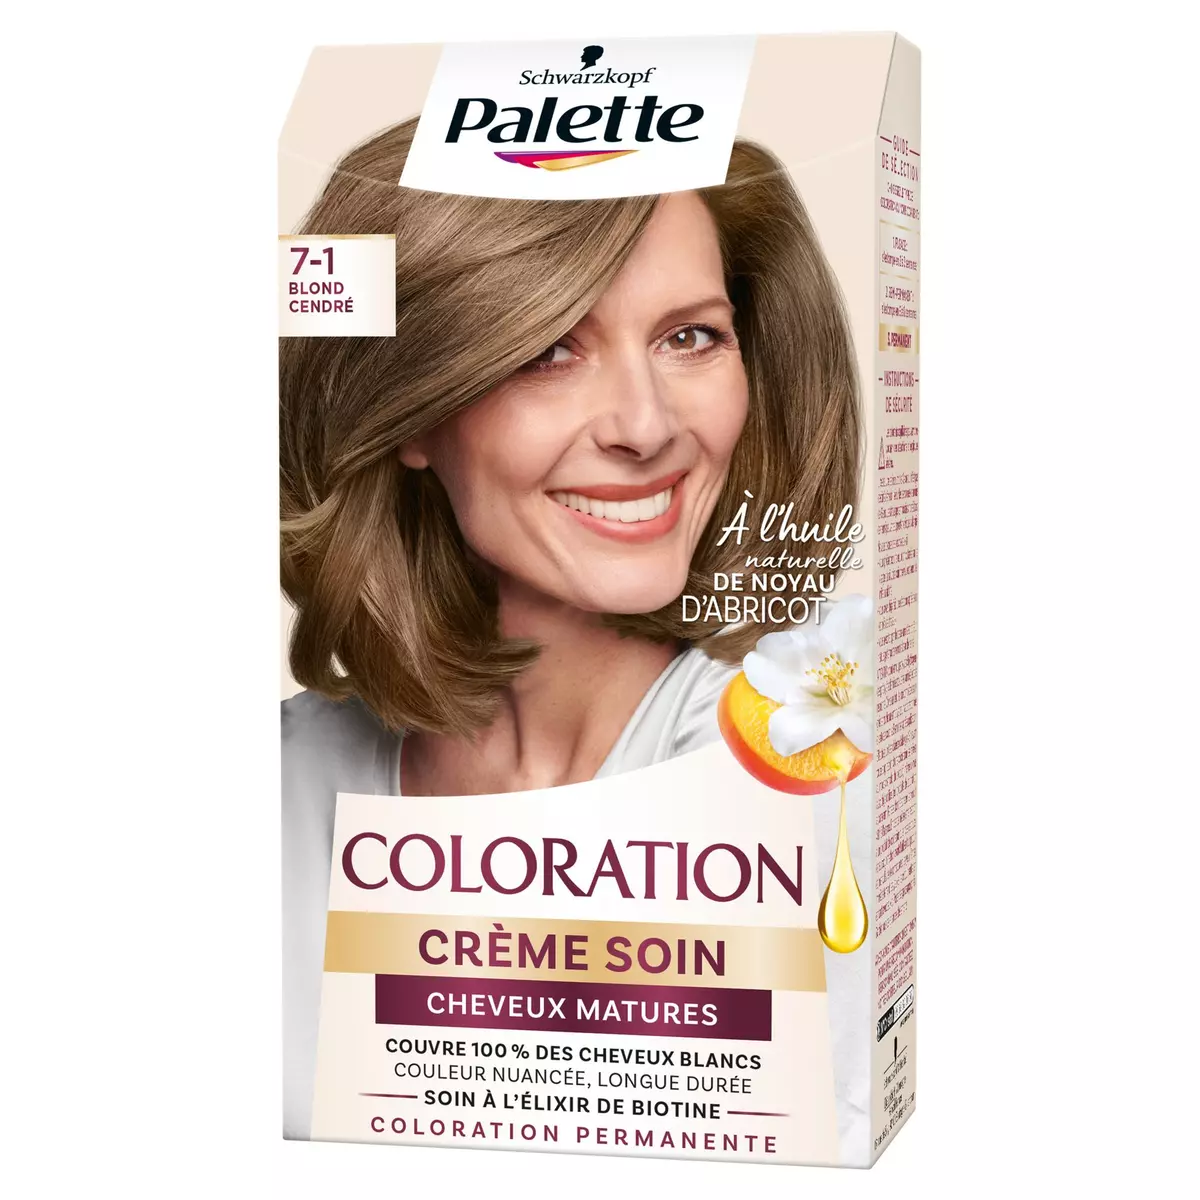 PALETTE Coloration permanente crème soin cheveux mature 7-1 blond cendré 1 kit